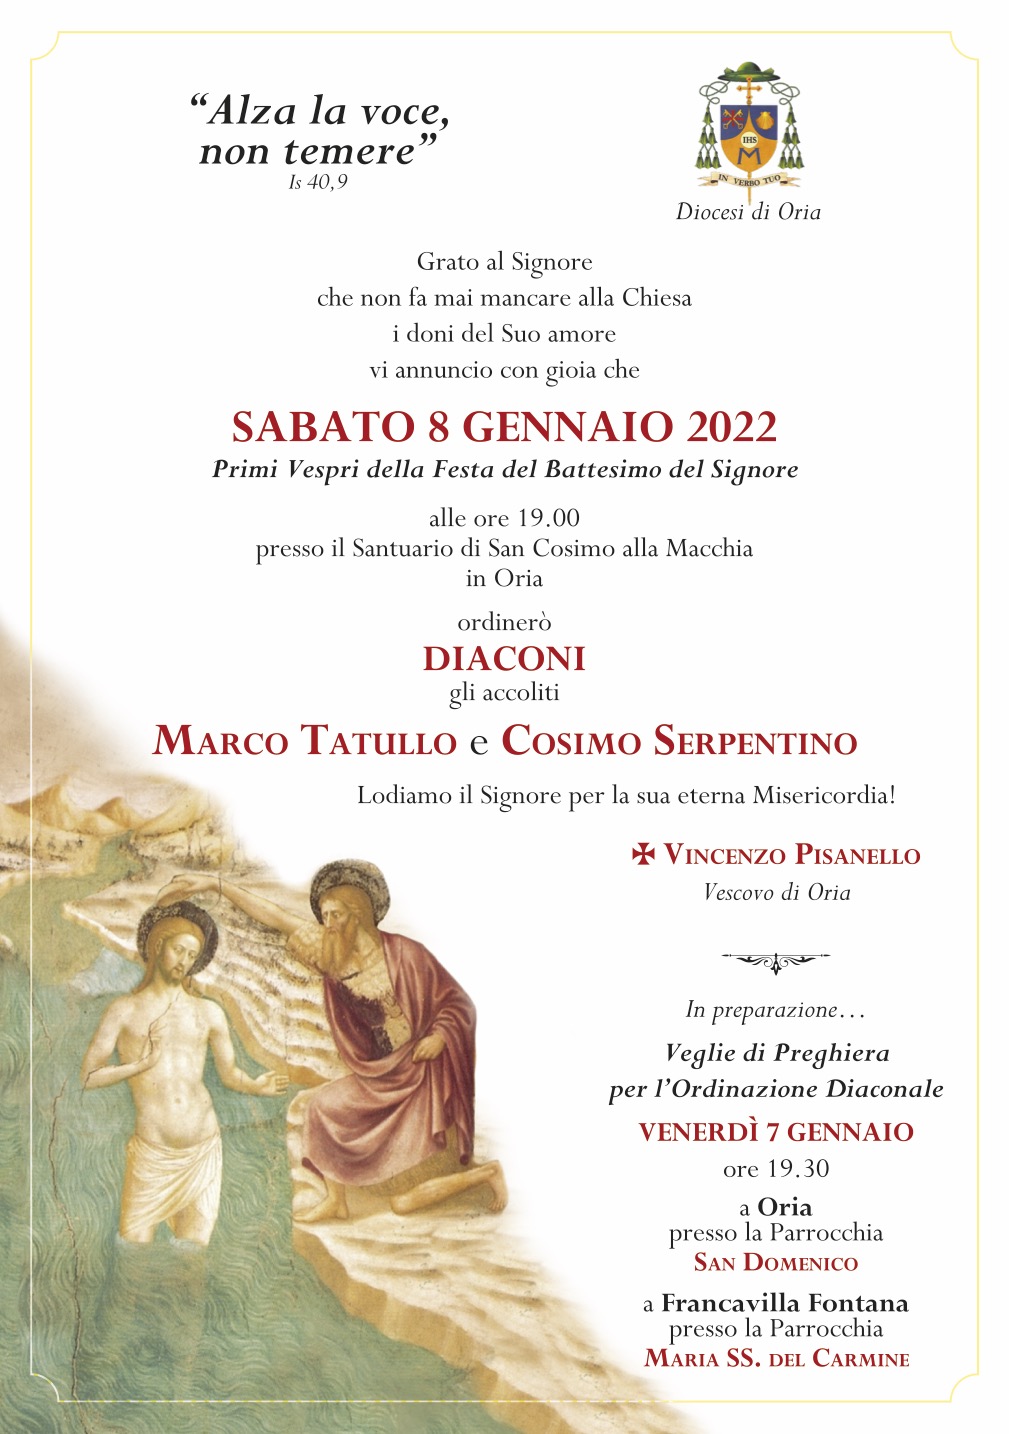 Locandina ordinazione diaconale di Marco Tatullo e Cosimo Serpentino